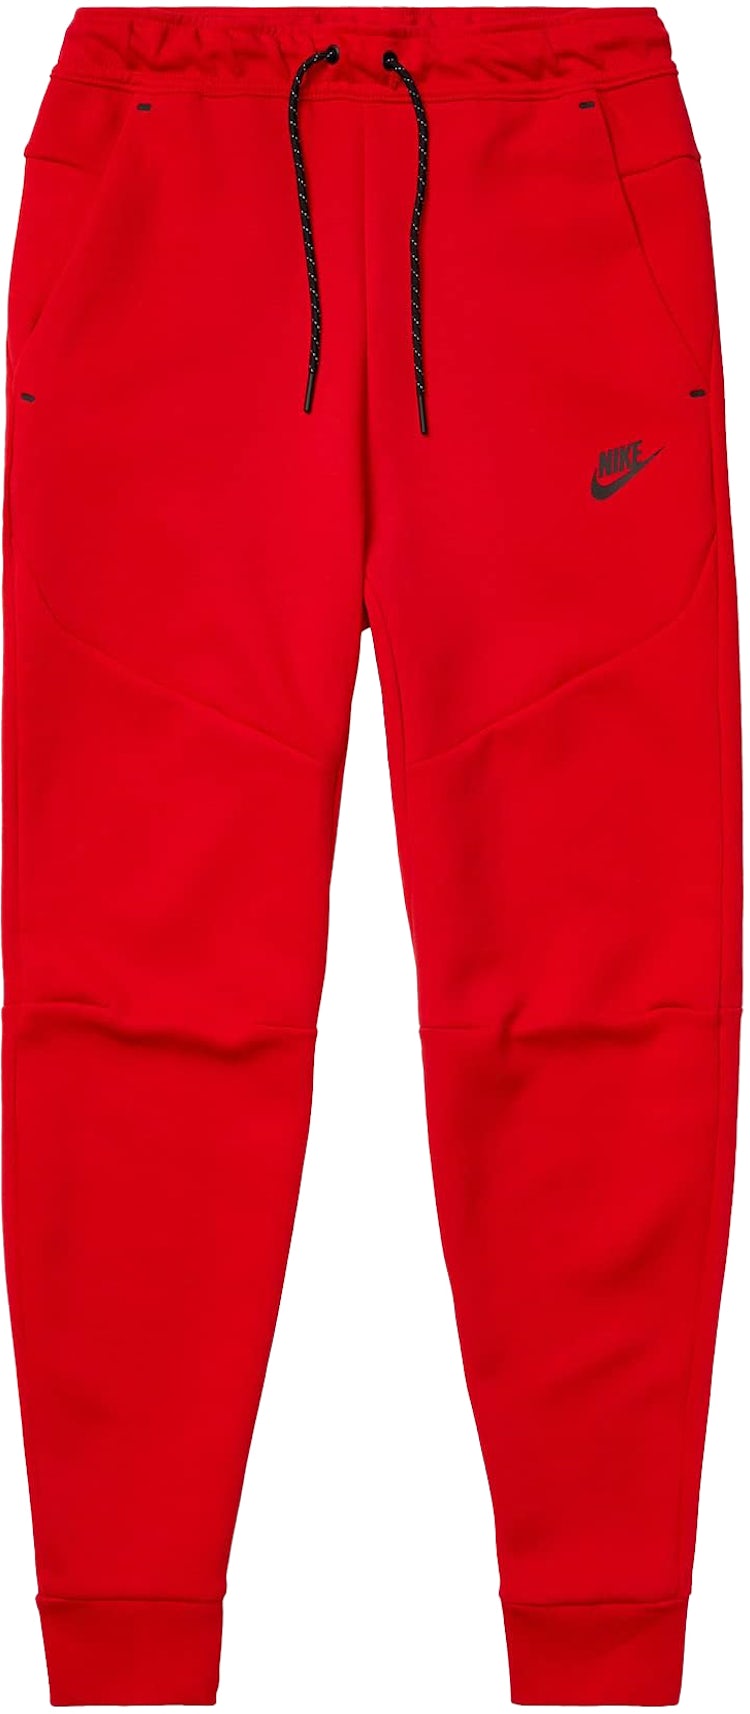 Nike Sportswear Tech Fleece Joggers Gym Red/Black Men's - US